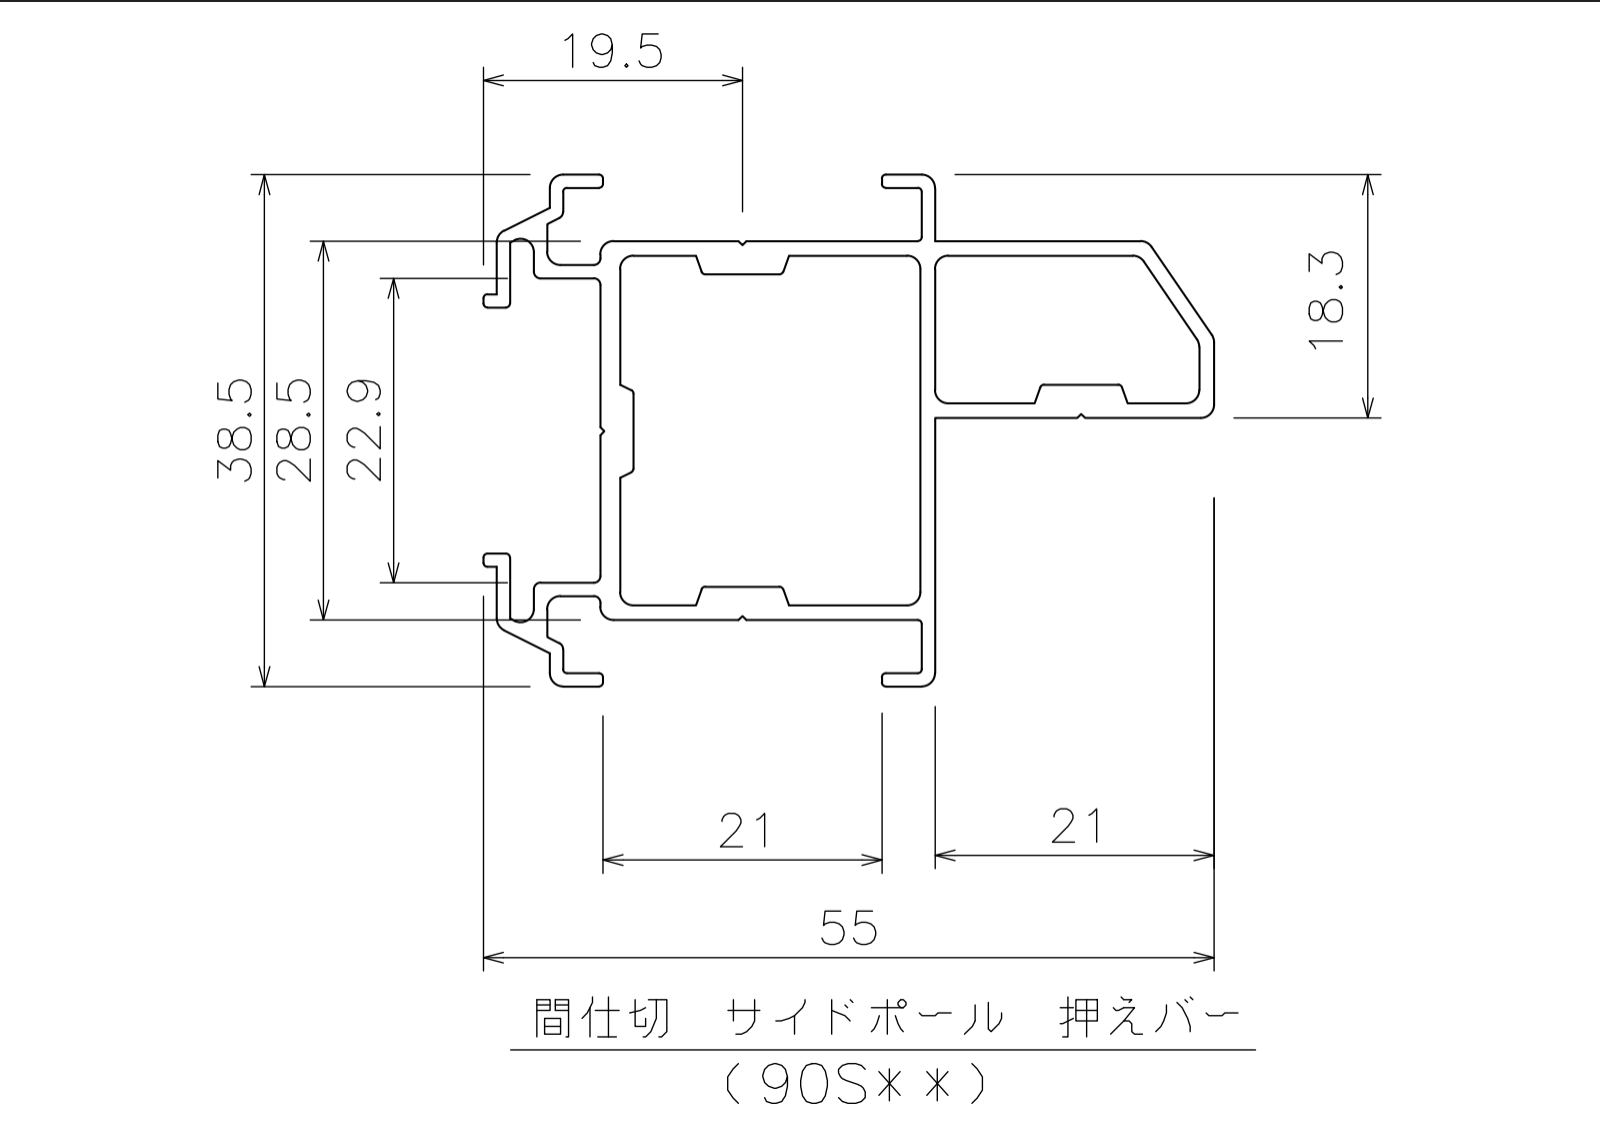 間仕切サイドポール【押えバータイプ】2.5mの寸法図-1